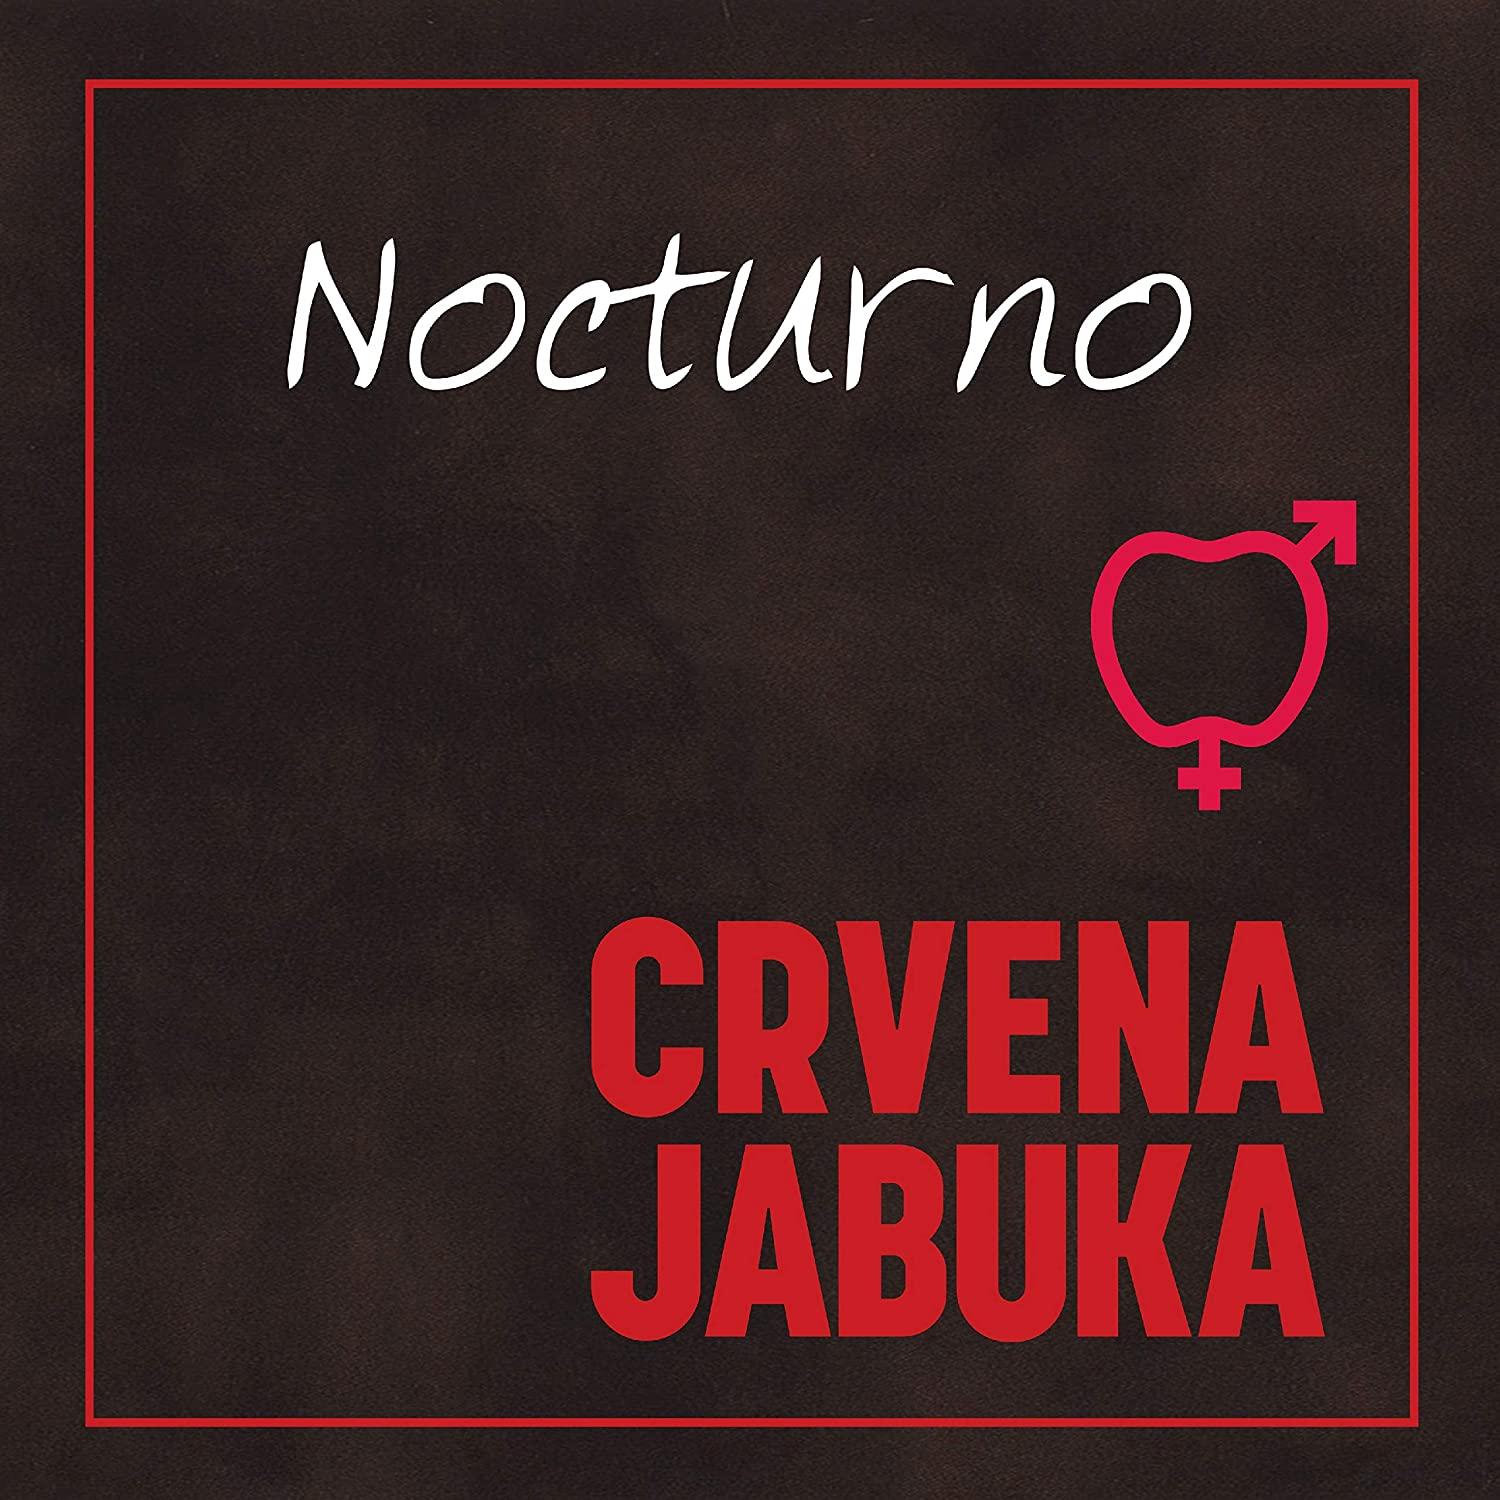 CRVENA JABUKA - Nocturno long play